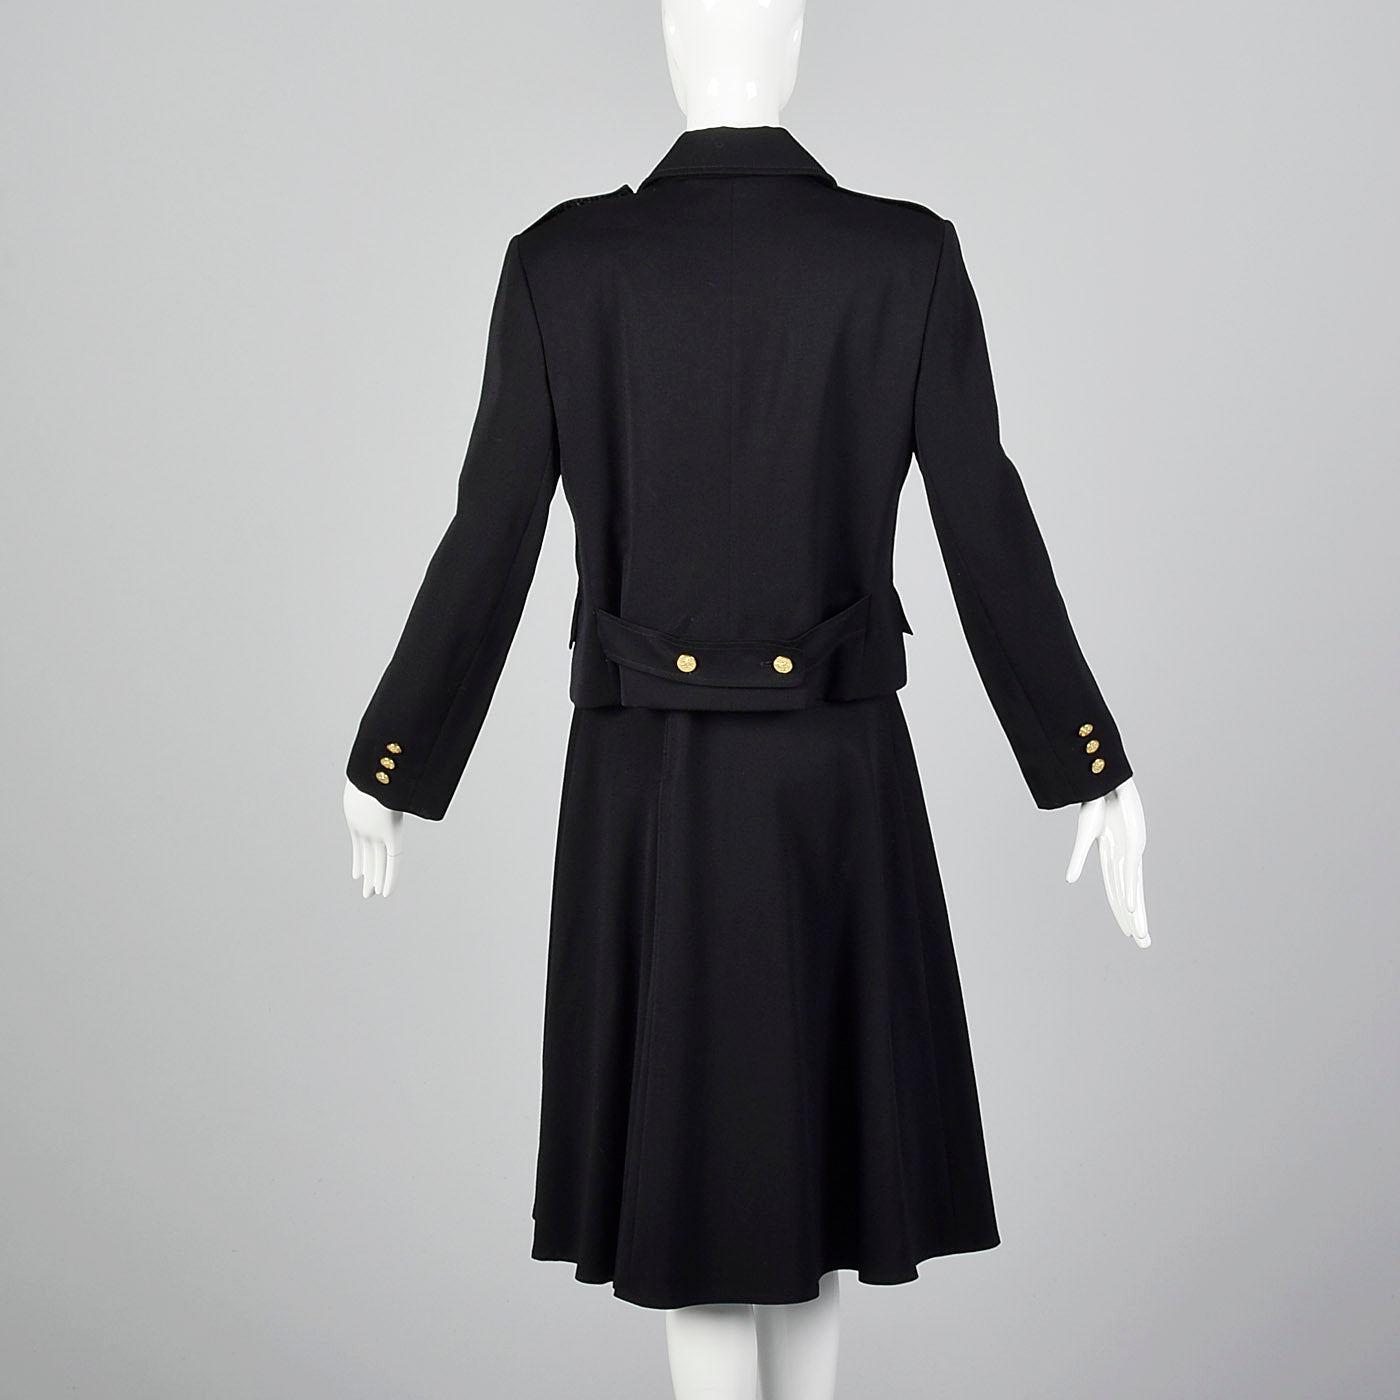 1960s Black Military Inspired Skirt Suit